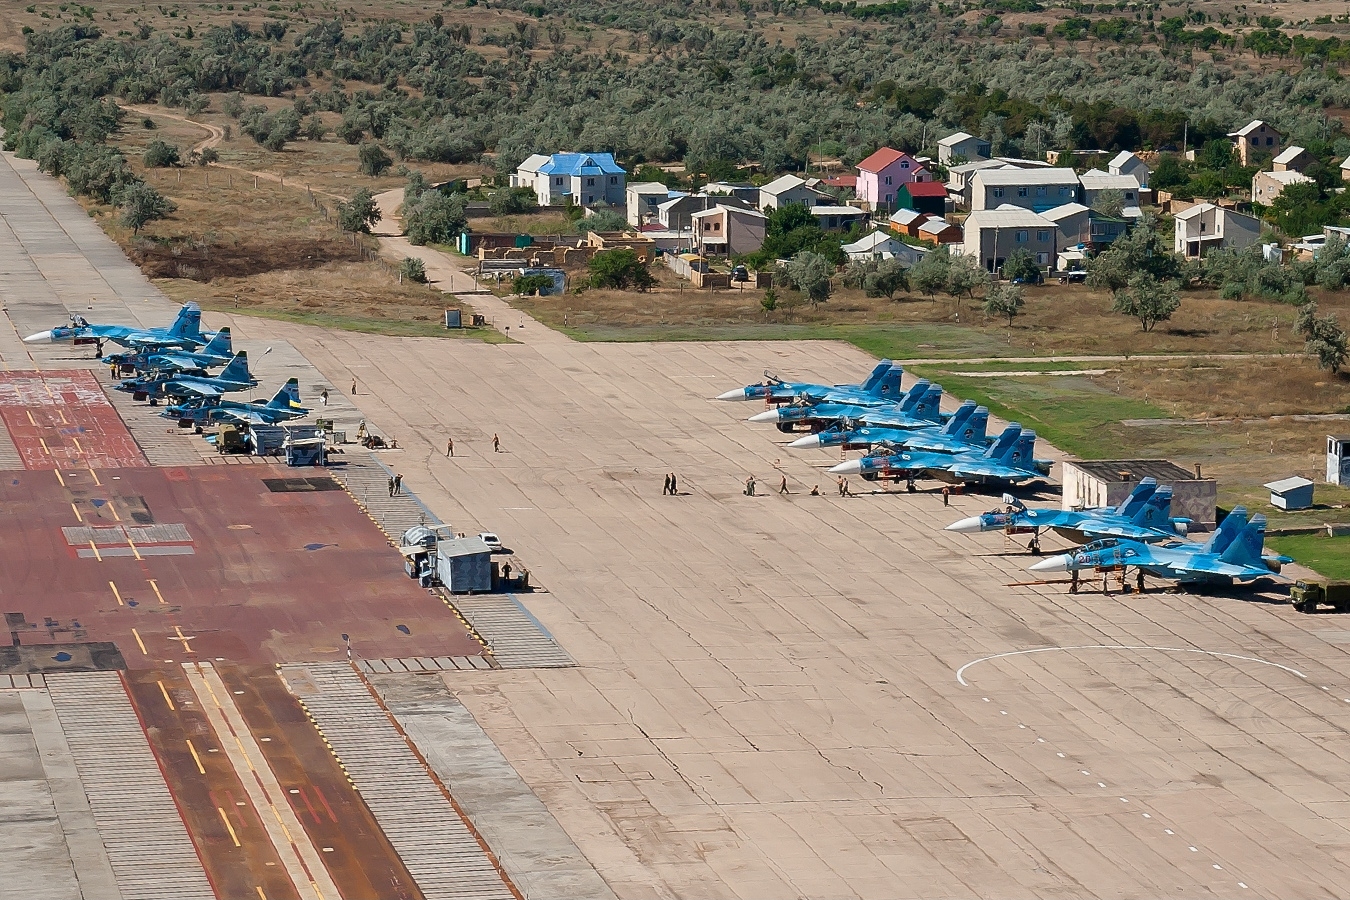 Russian_Naval_Aviation_aircraft_at_Novofedorovka_airbase.jpg